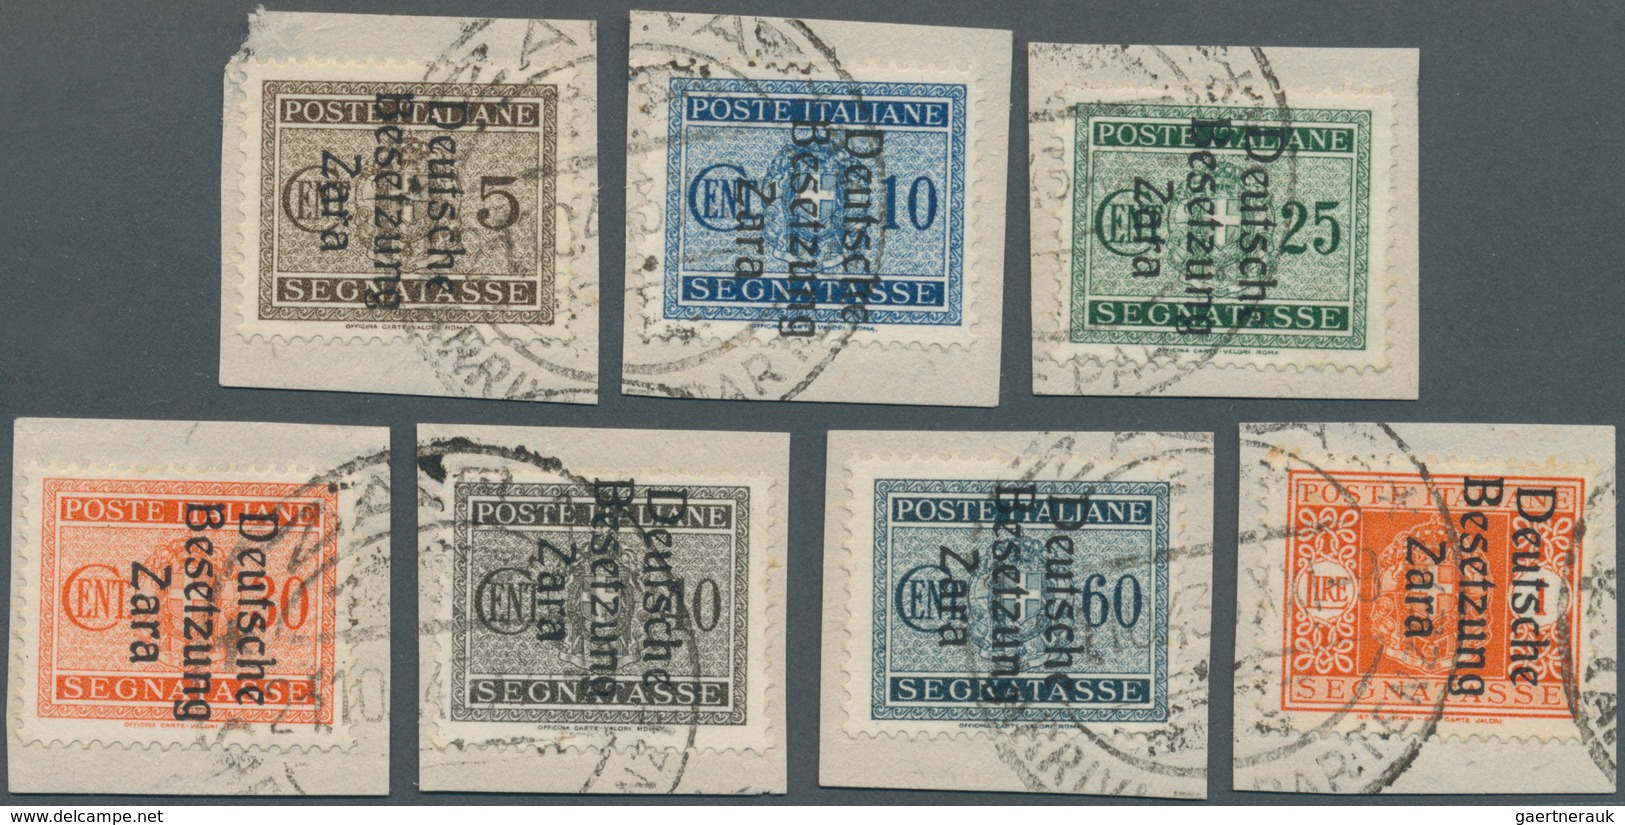 Dt. Besetzung II WK - Zara - Portomarken: 1943, 5 C Bis 10 C, 25 C Bis 40 C, 60 C Und 1 L Mi Aufdruc - Besetzungen 1938-45